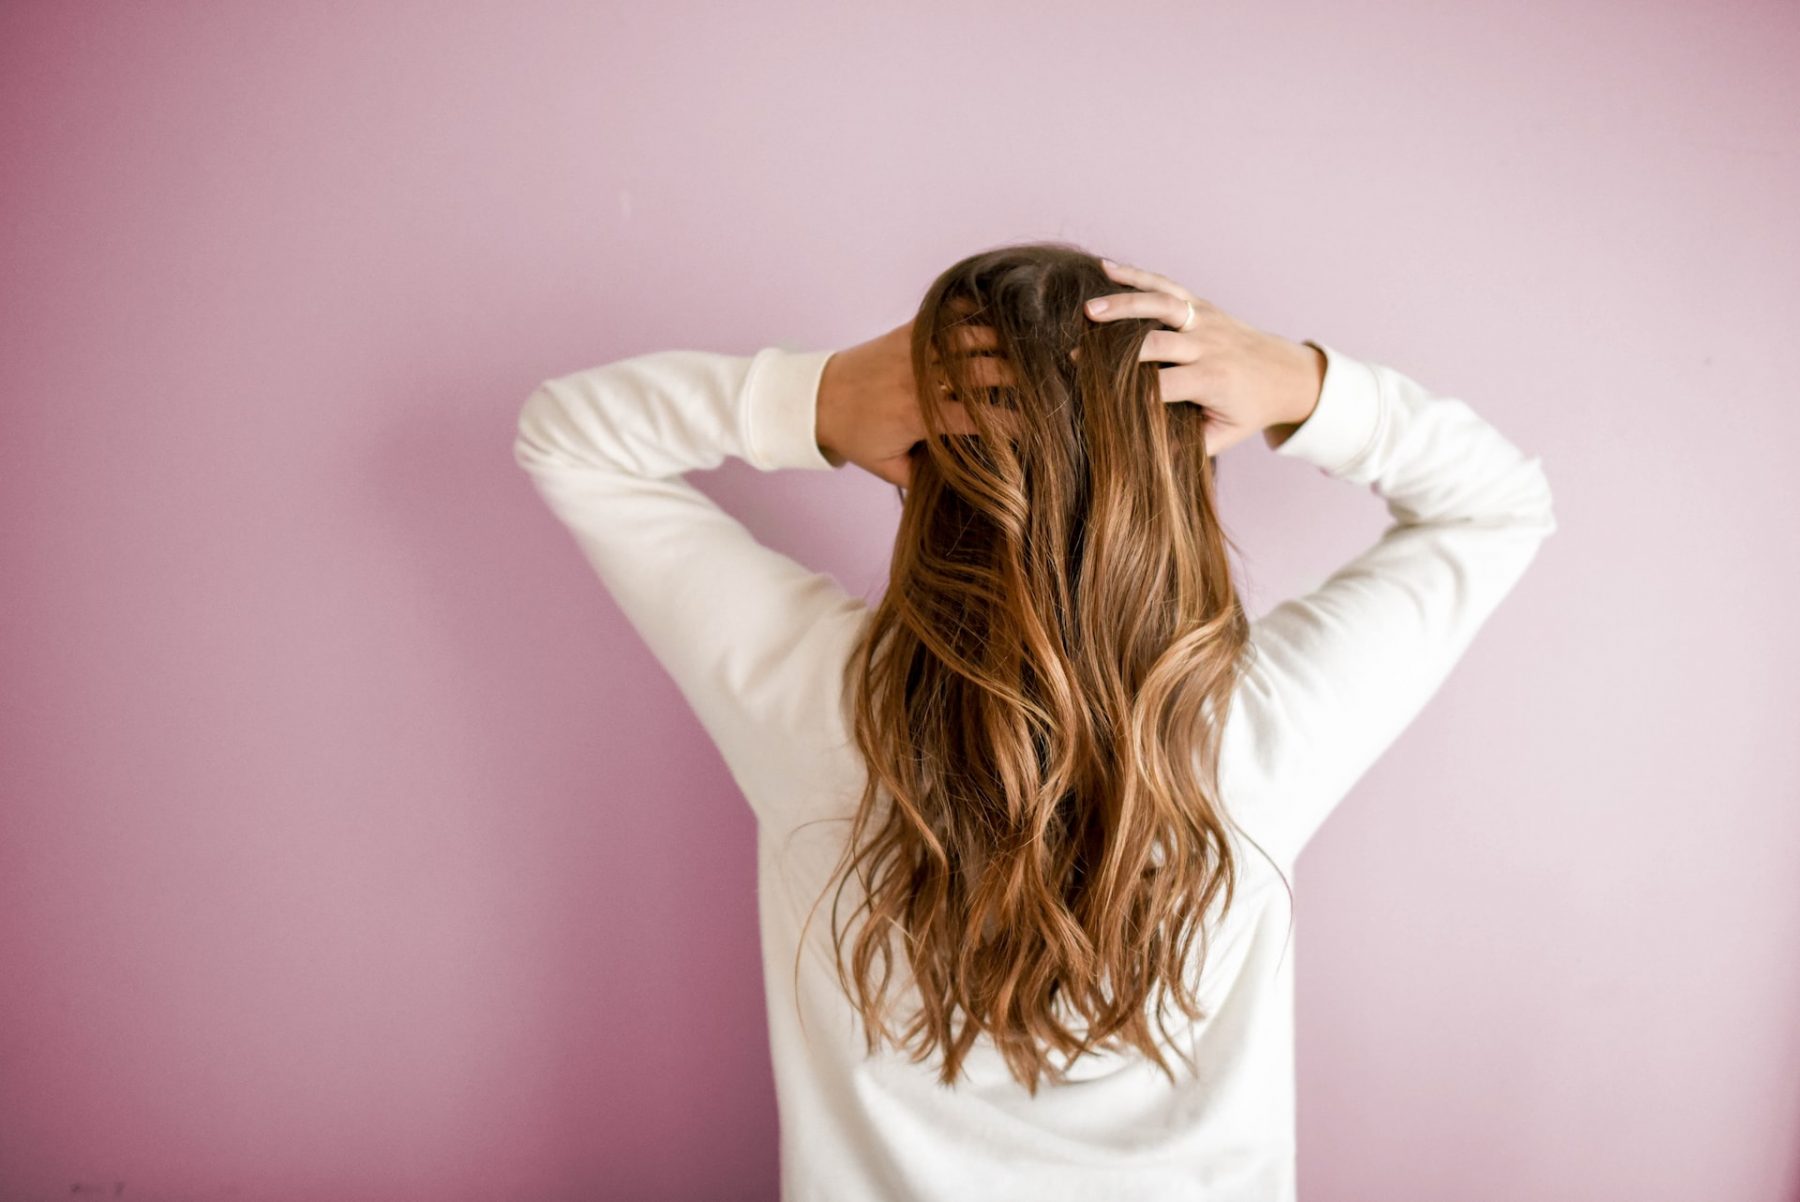 Λιπαρά μαλλιά: Συμβουλές για να αποφύγετε τη λιπαρότητα εύκολα & γρήγορα